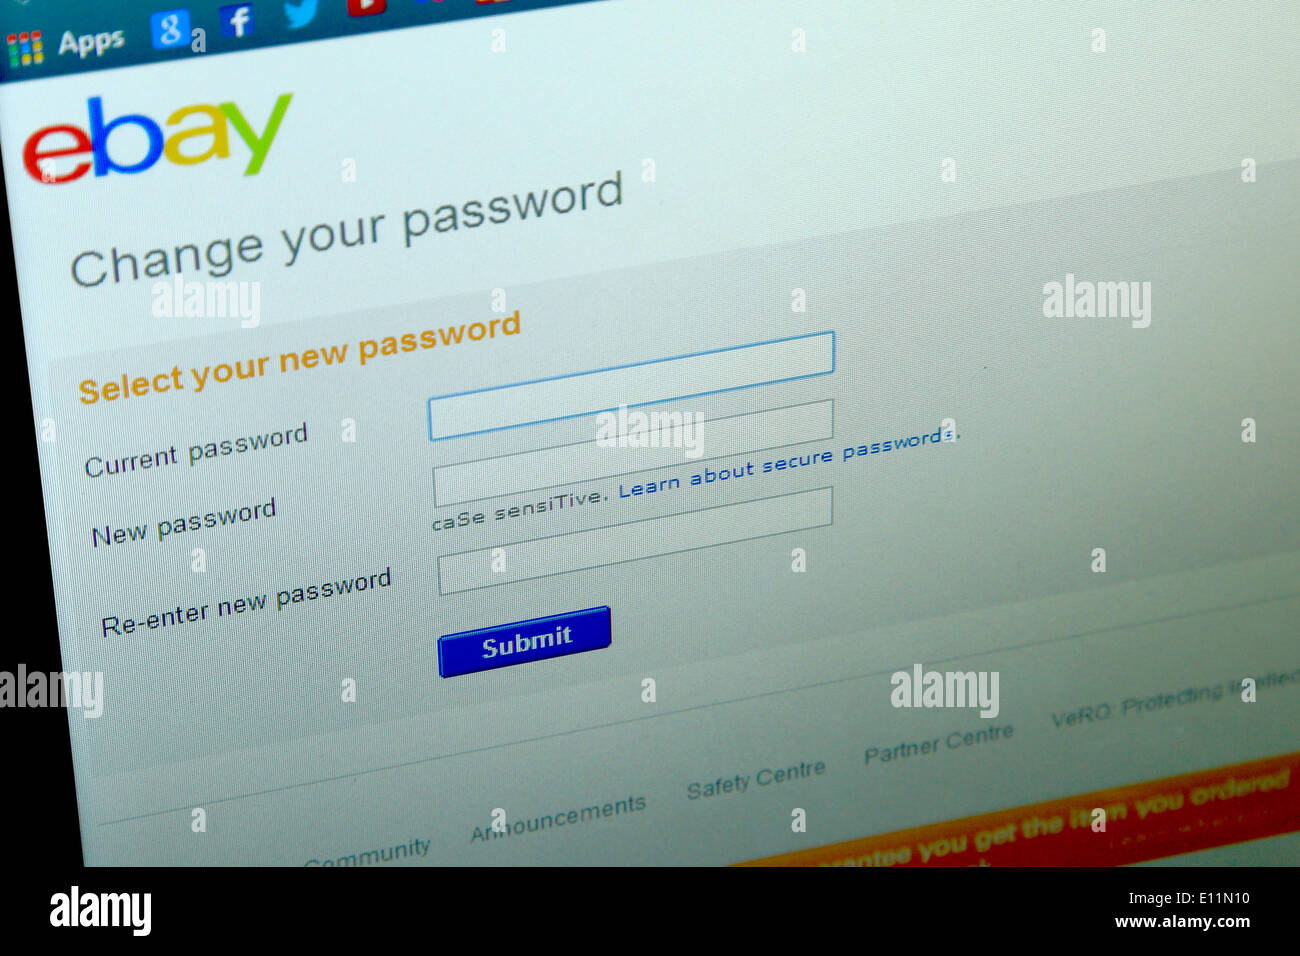 21 mai 2014, les alertes Ebay ses utilisateurs de changer leurs mots de passe après une violation de données. Paul Stewart/Alamy News Banque D'Images